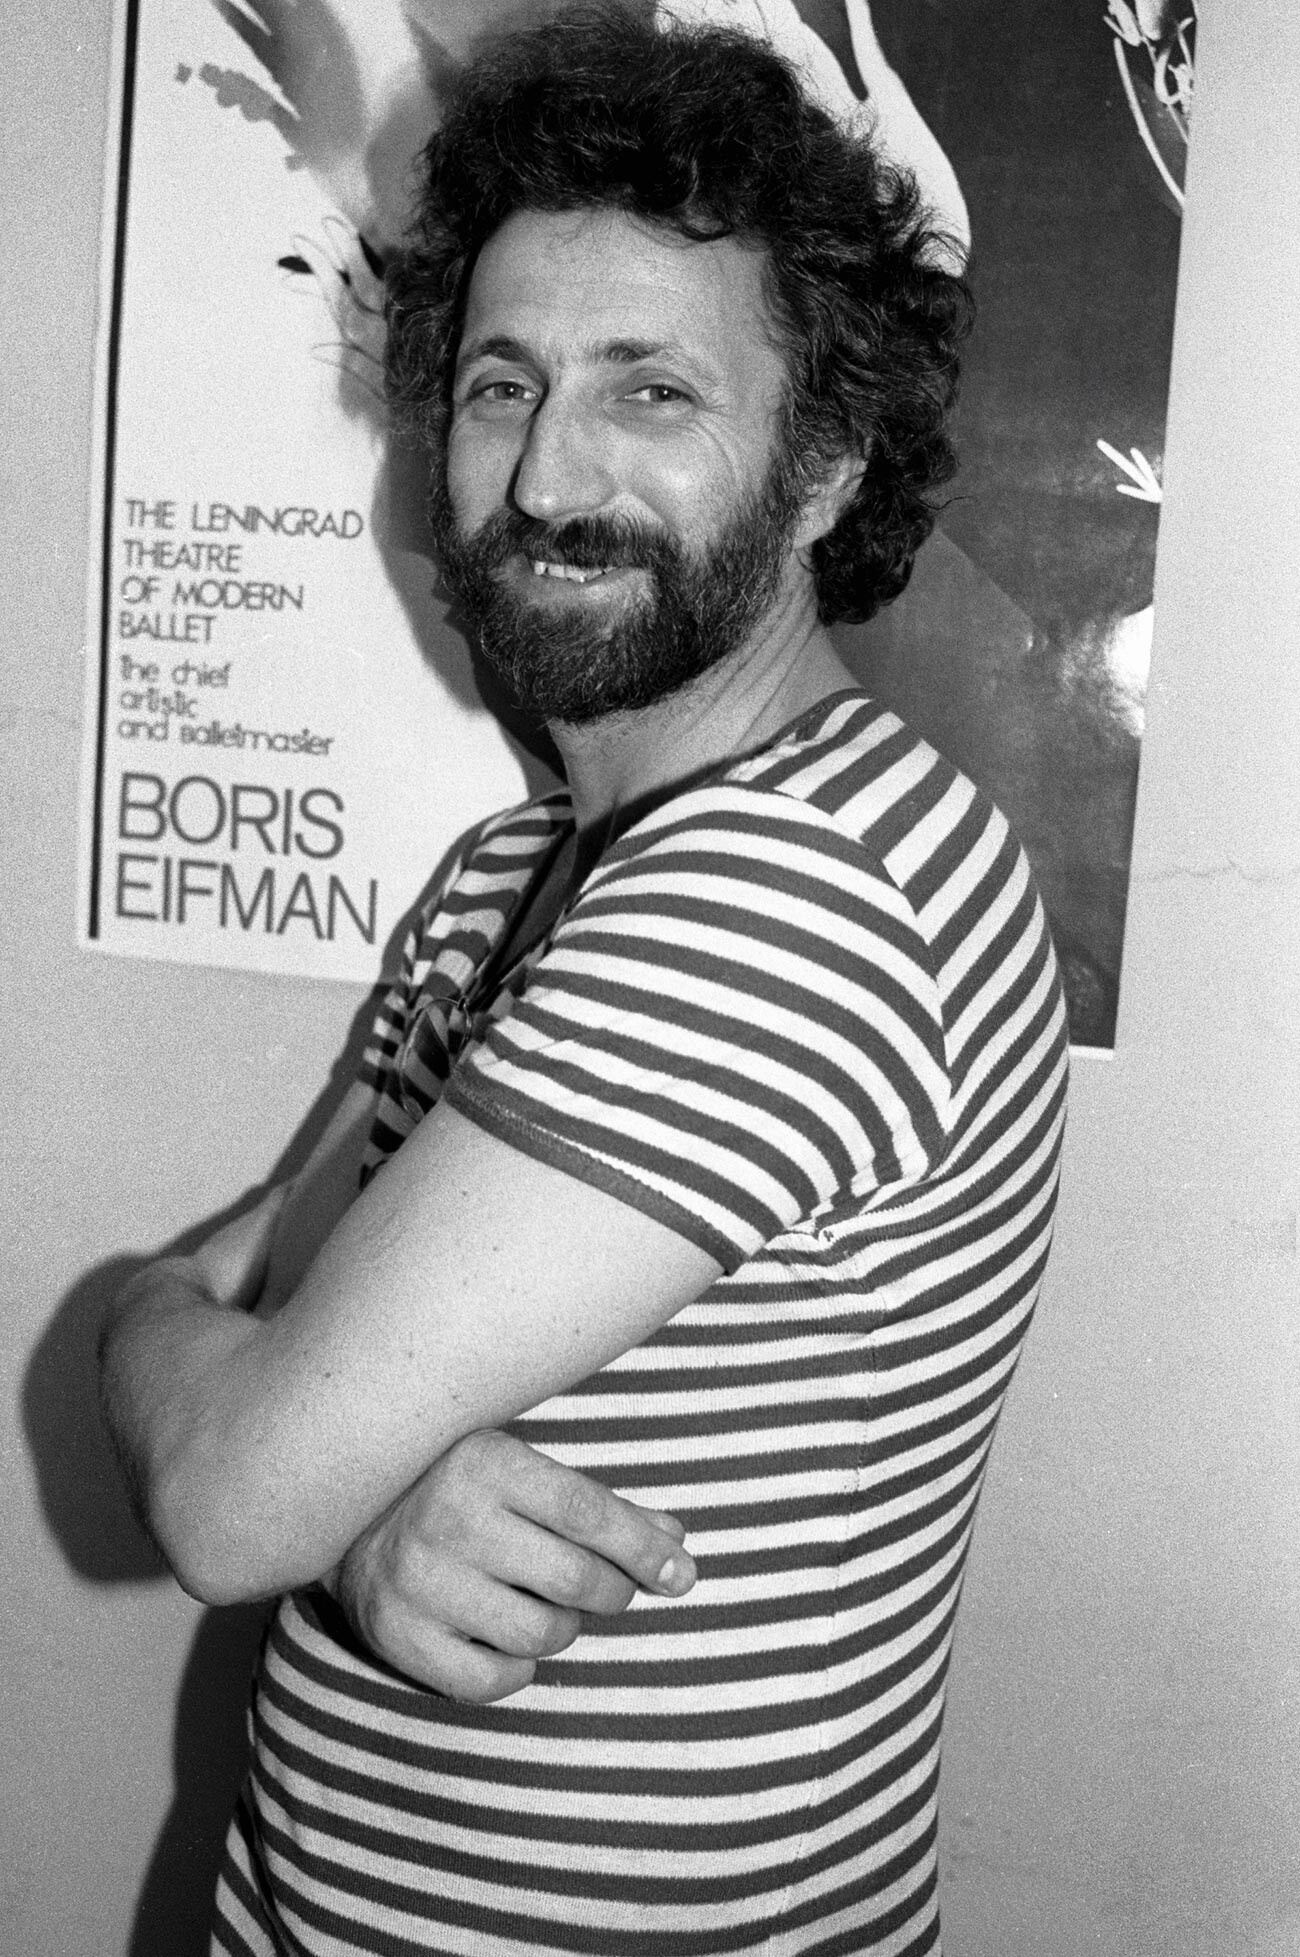 Boris Eifman in 1988